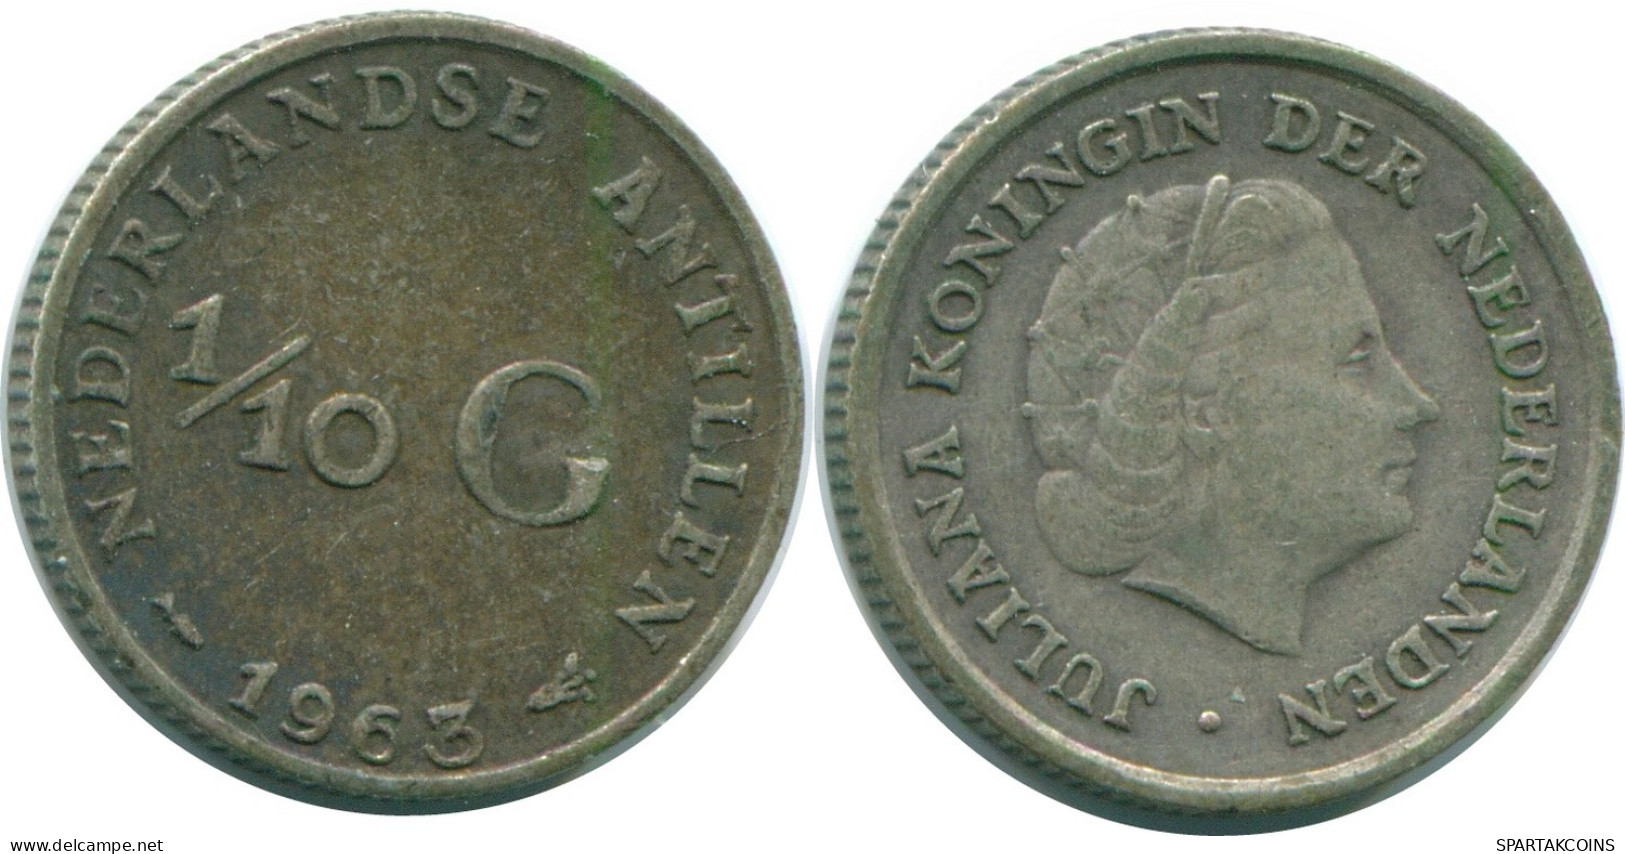 1/10 GULDEN 1963 NIEDERLÄNDISCHE ANTILLEN SILBER Koloniale Münze #NL12504.3.D.A - Antillas Neerlandesas